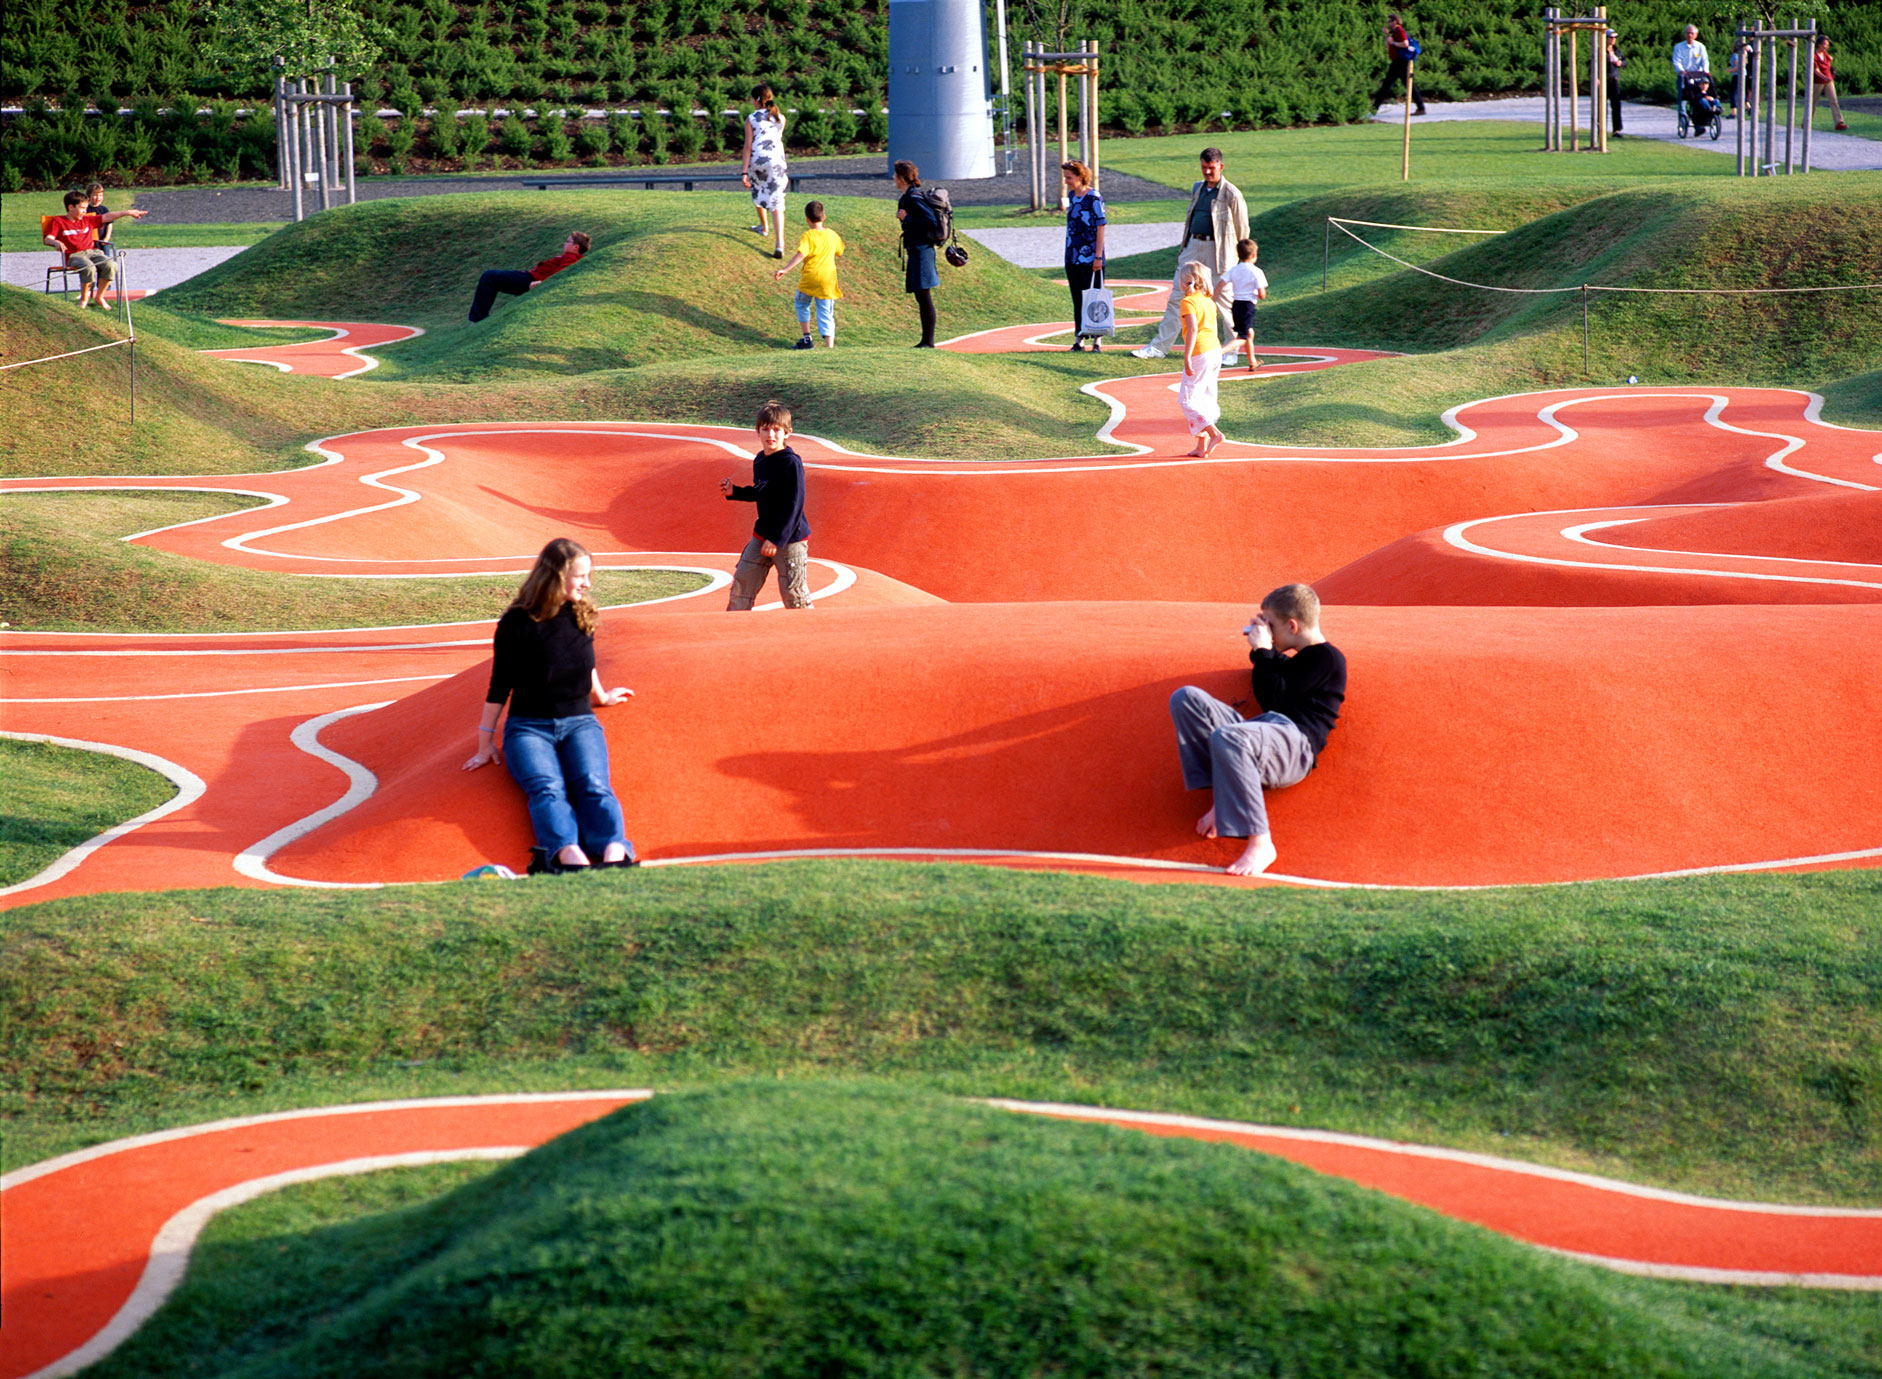 Rainer Schmidt crée en 2005 une aire de jeu pas comme les autres : le BUGA 05 Playground de Munich